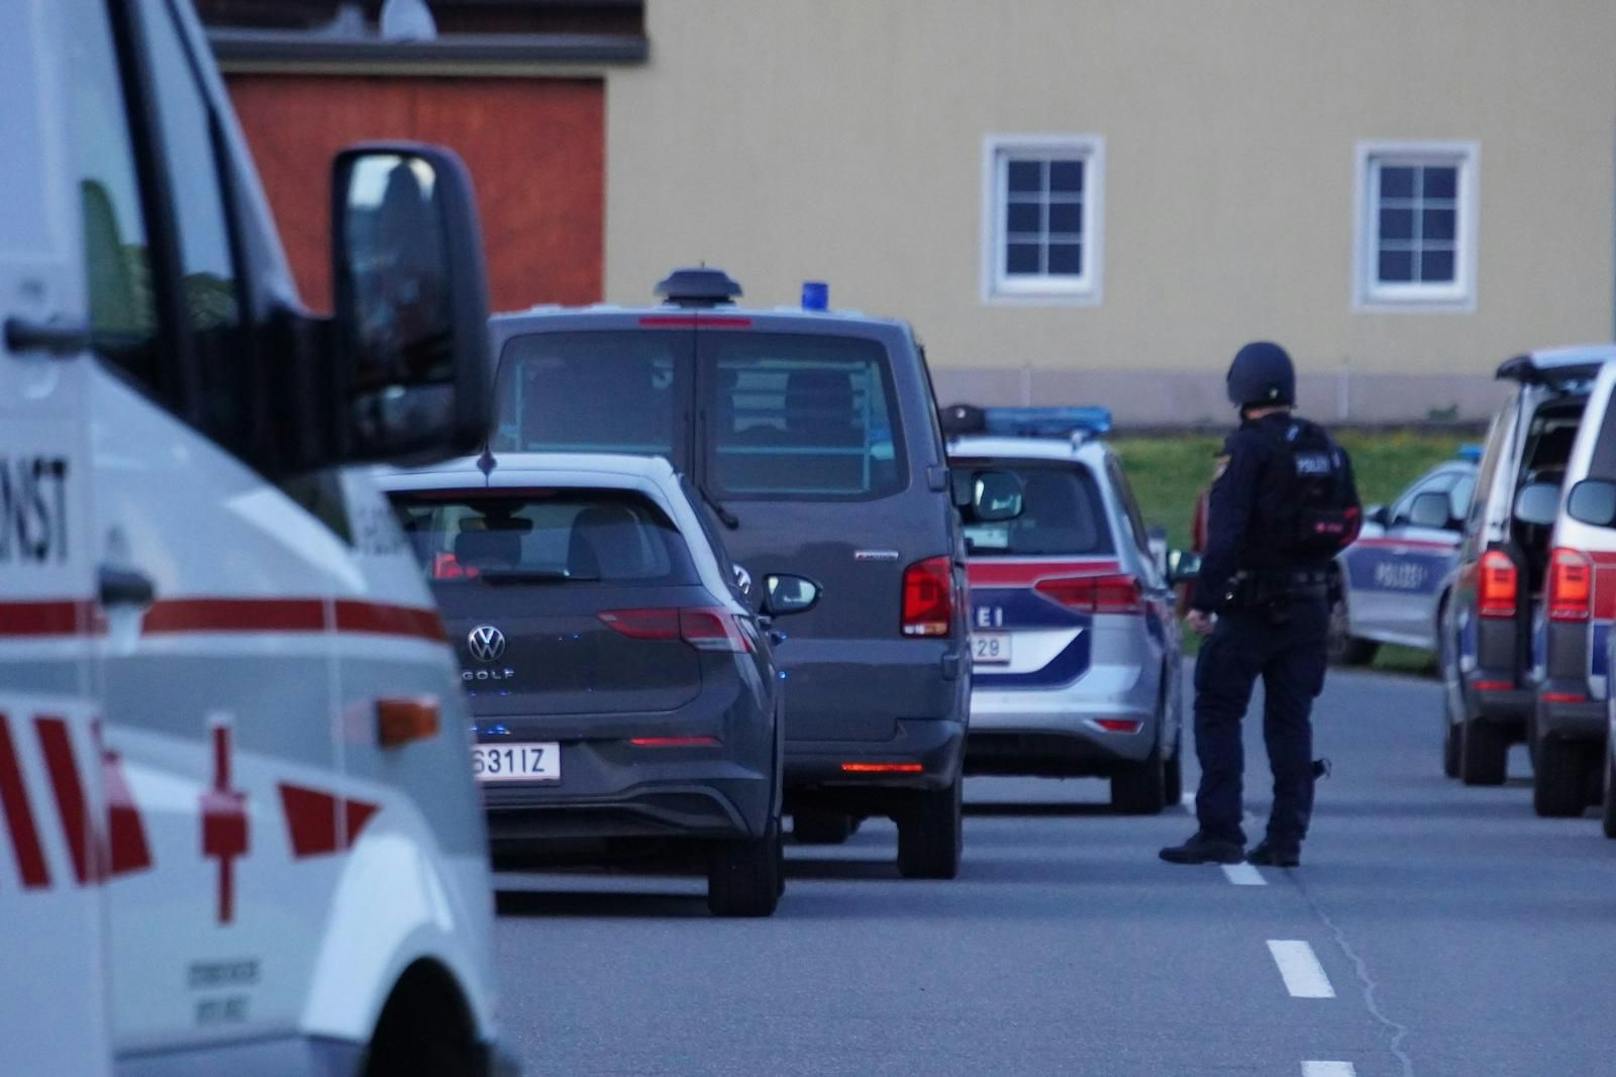 Mordalarm in Pielach - überall Blautlichtfahrzeuge